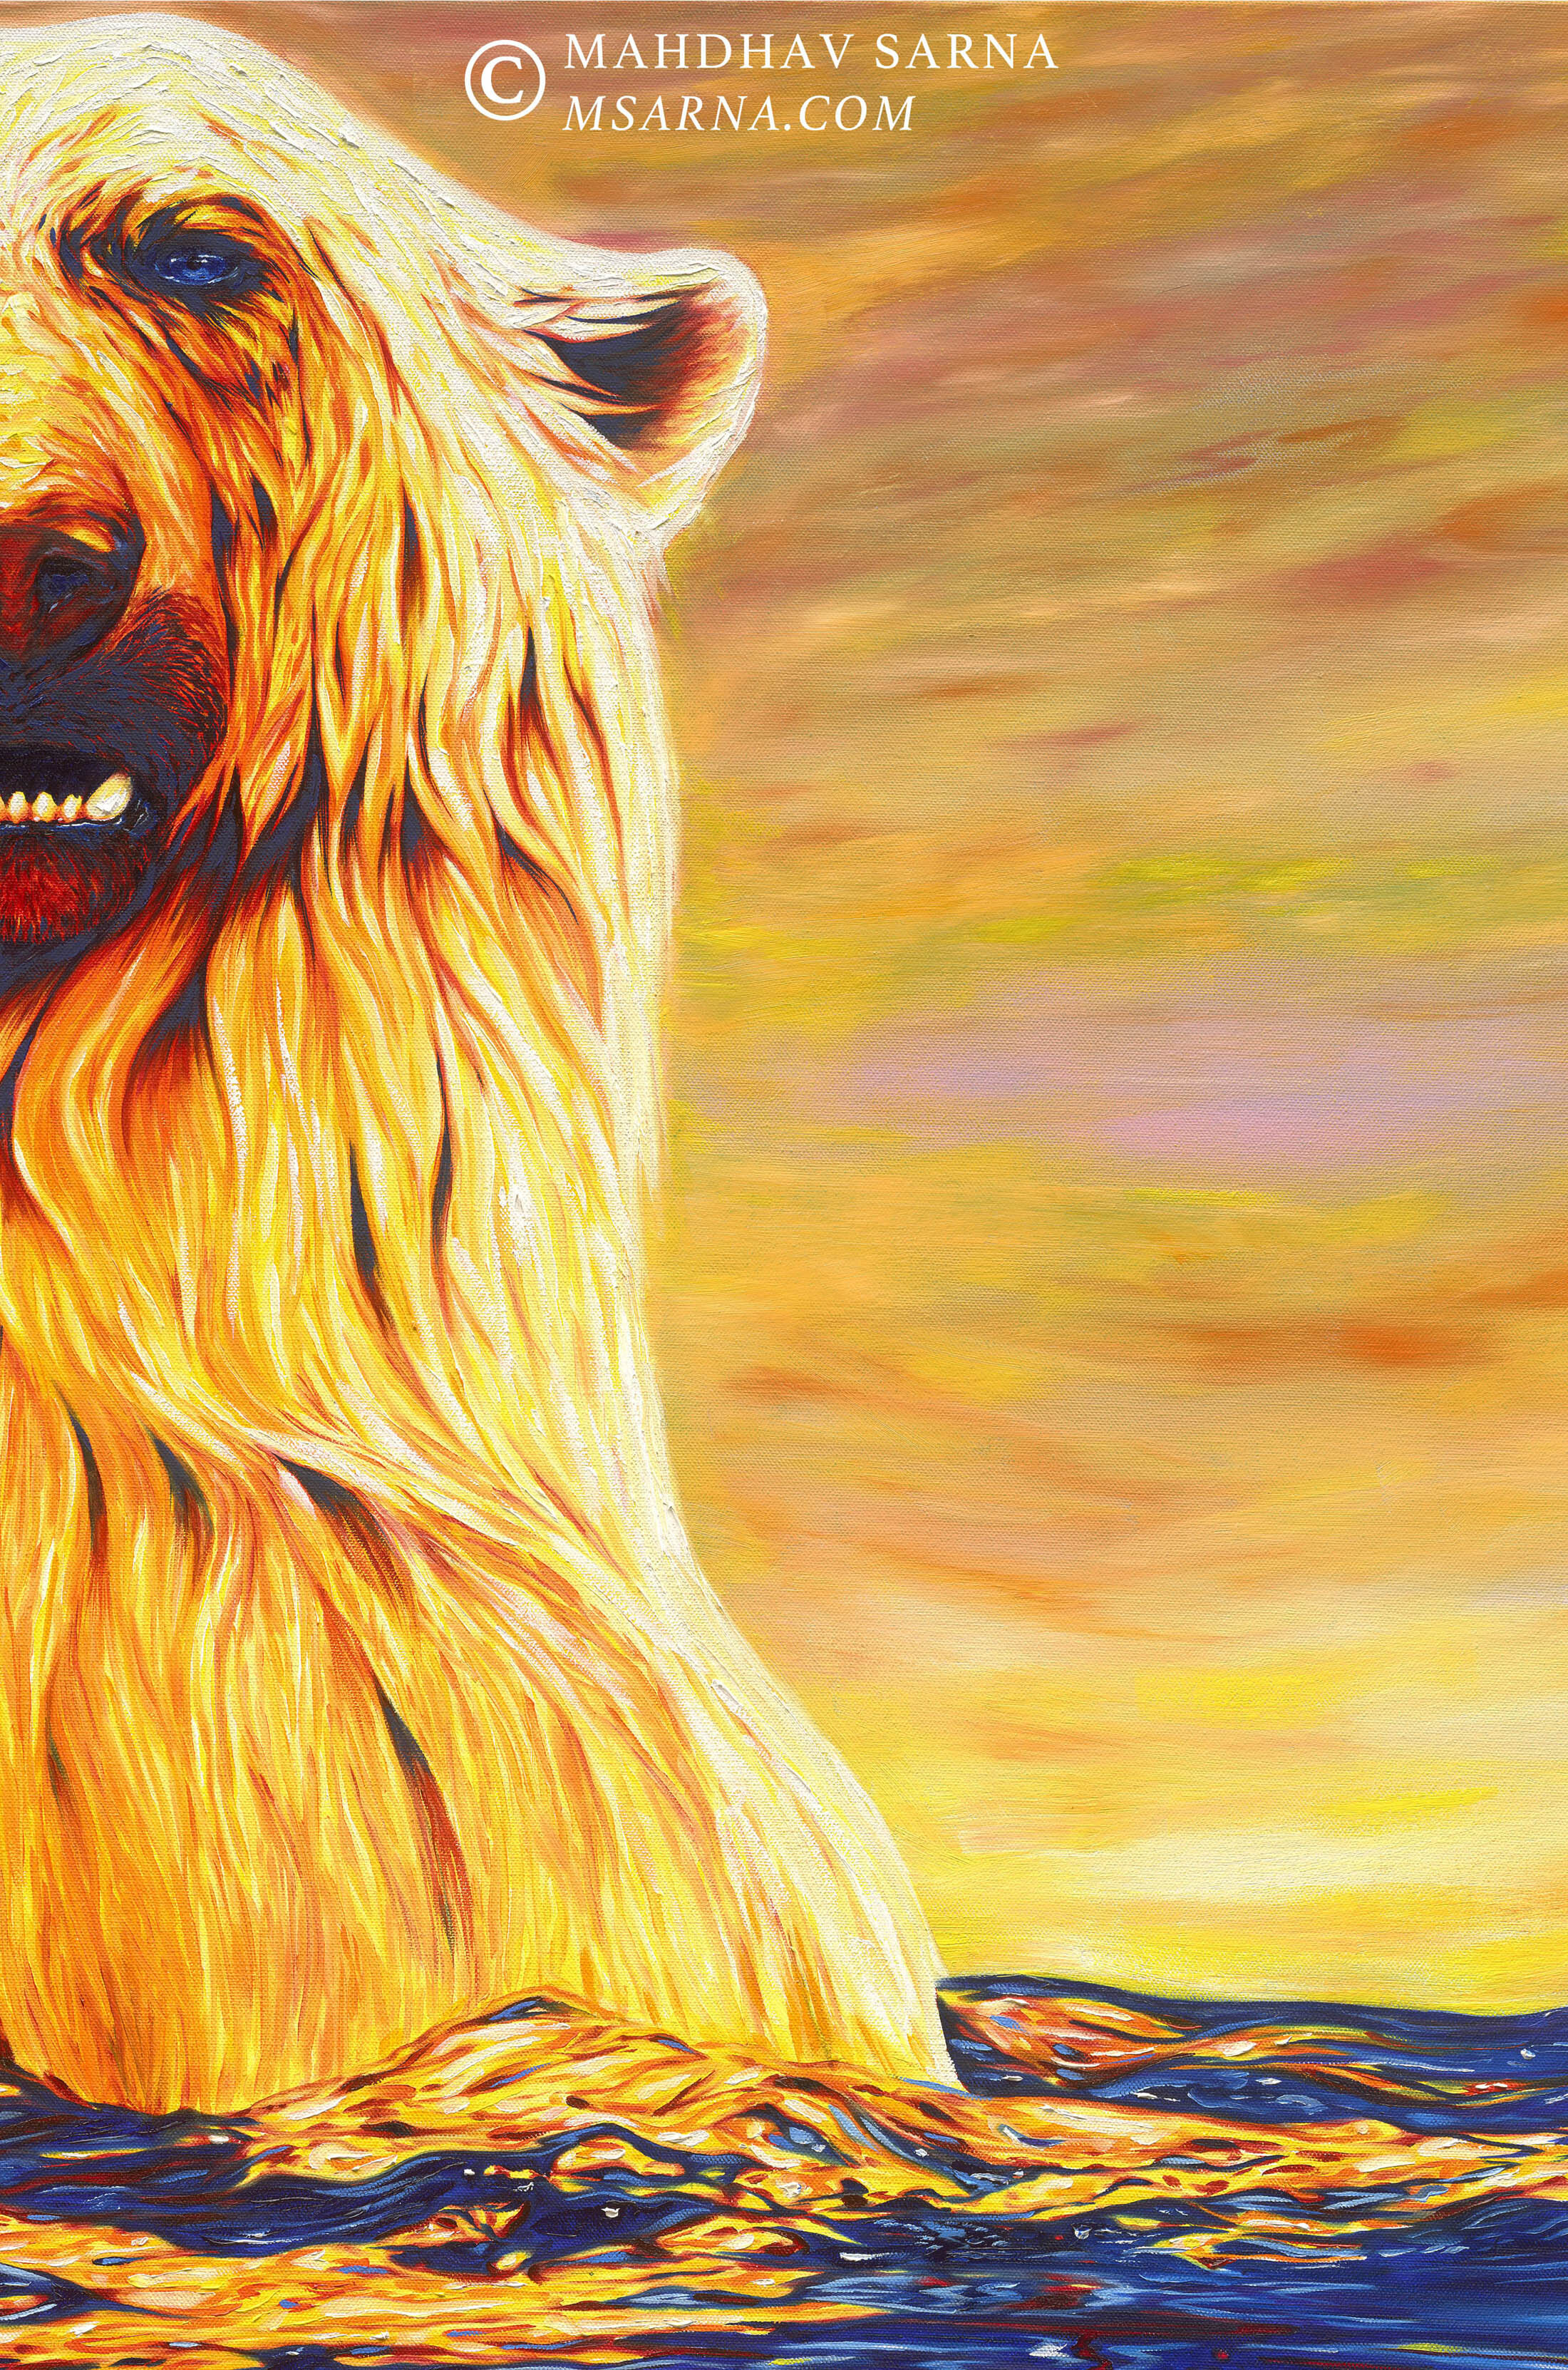 polar bear oil painting ssbr wildlife art mahdhav sarna 03.jpg